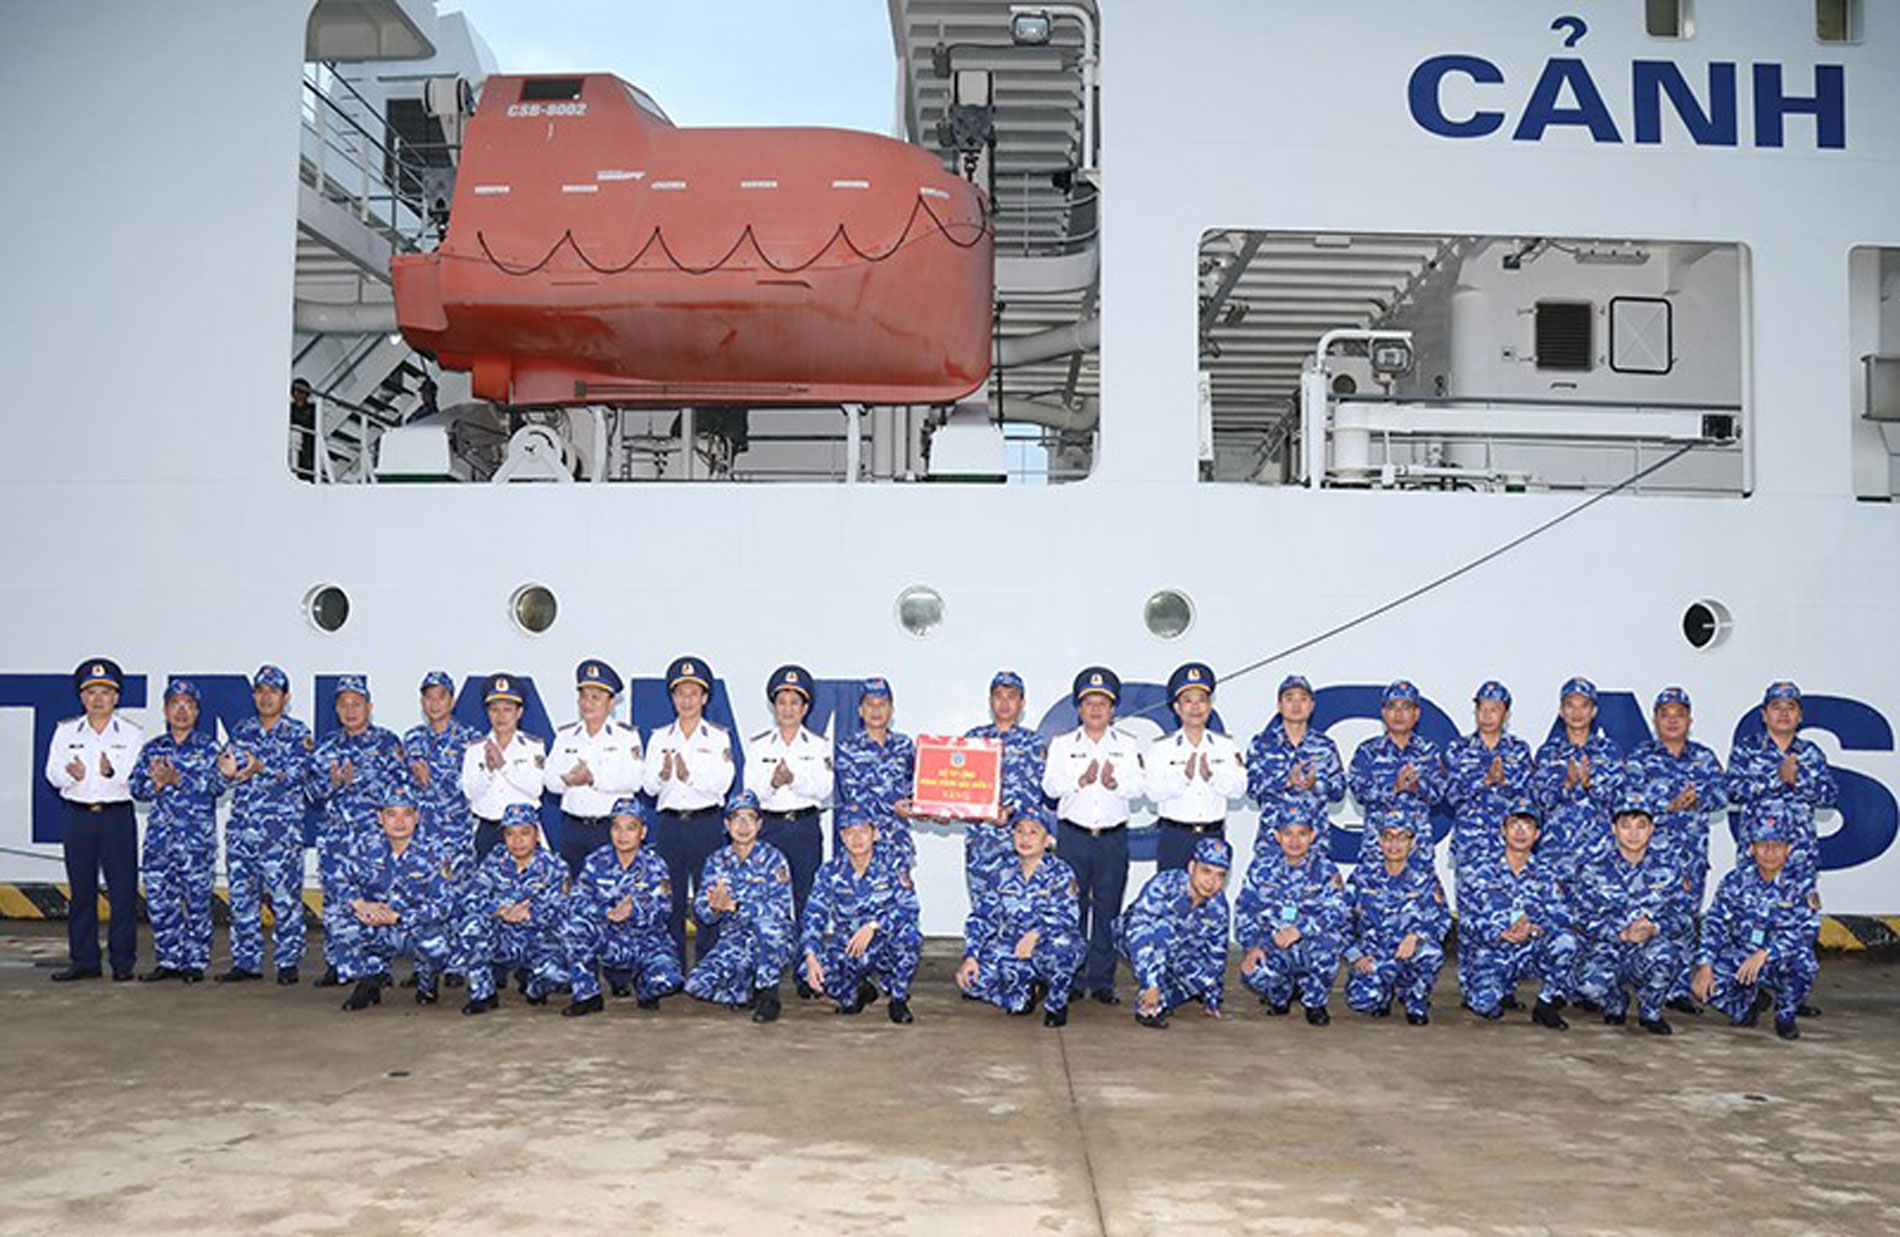 越南海警与中国海警2023年第二次北部湾分界线附近海域联合巡逻于11月27日至12月2日开展。巡逻航程255.5海里，从陈岛以东南14海里至昏果岛（Cồn Cỏ）以东北48海里，共13个检查点。越南海警8004号和8002号舰编队与中国海警两艘舰艇组成的编队分别对北部湾分界线两侧进行巡逻。联合巡逻活动有助于有效落实国际法律，向渔民进行渔业法律法规宣传教育，维护北部湾海域的安全秩序。此外，此次巡逻还为继续维护和发挥越中两国警察力量的团结精神，加强互信，增进友谊做出贡献。